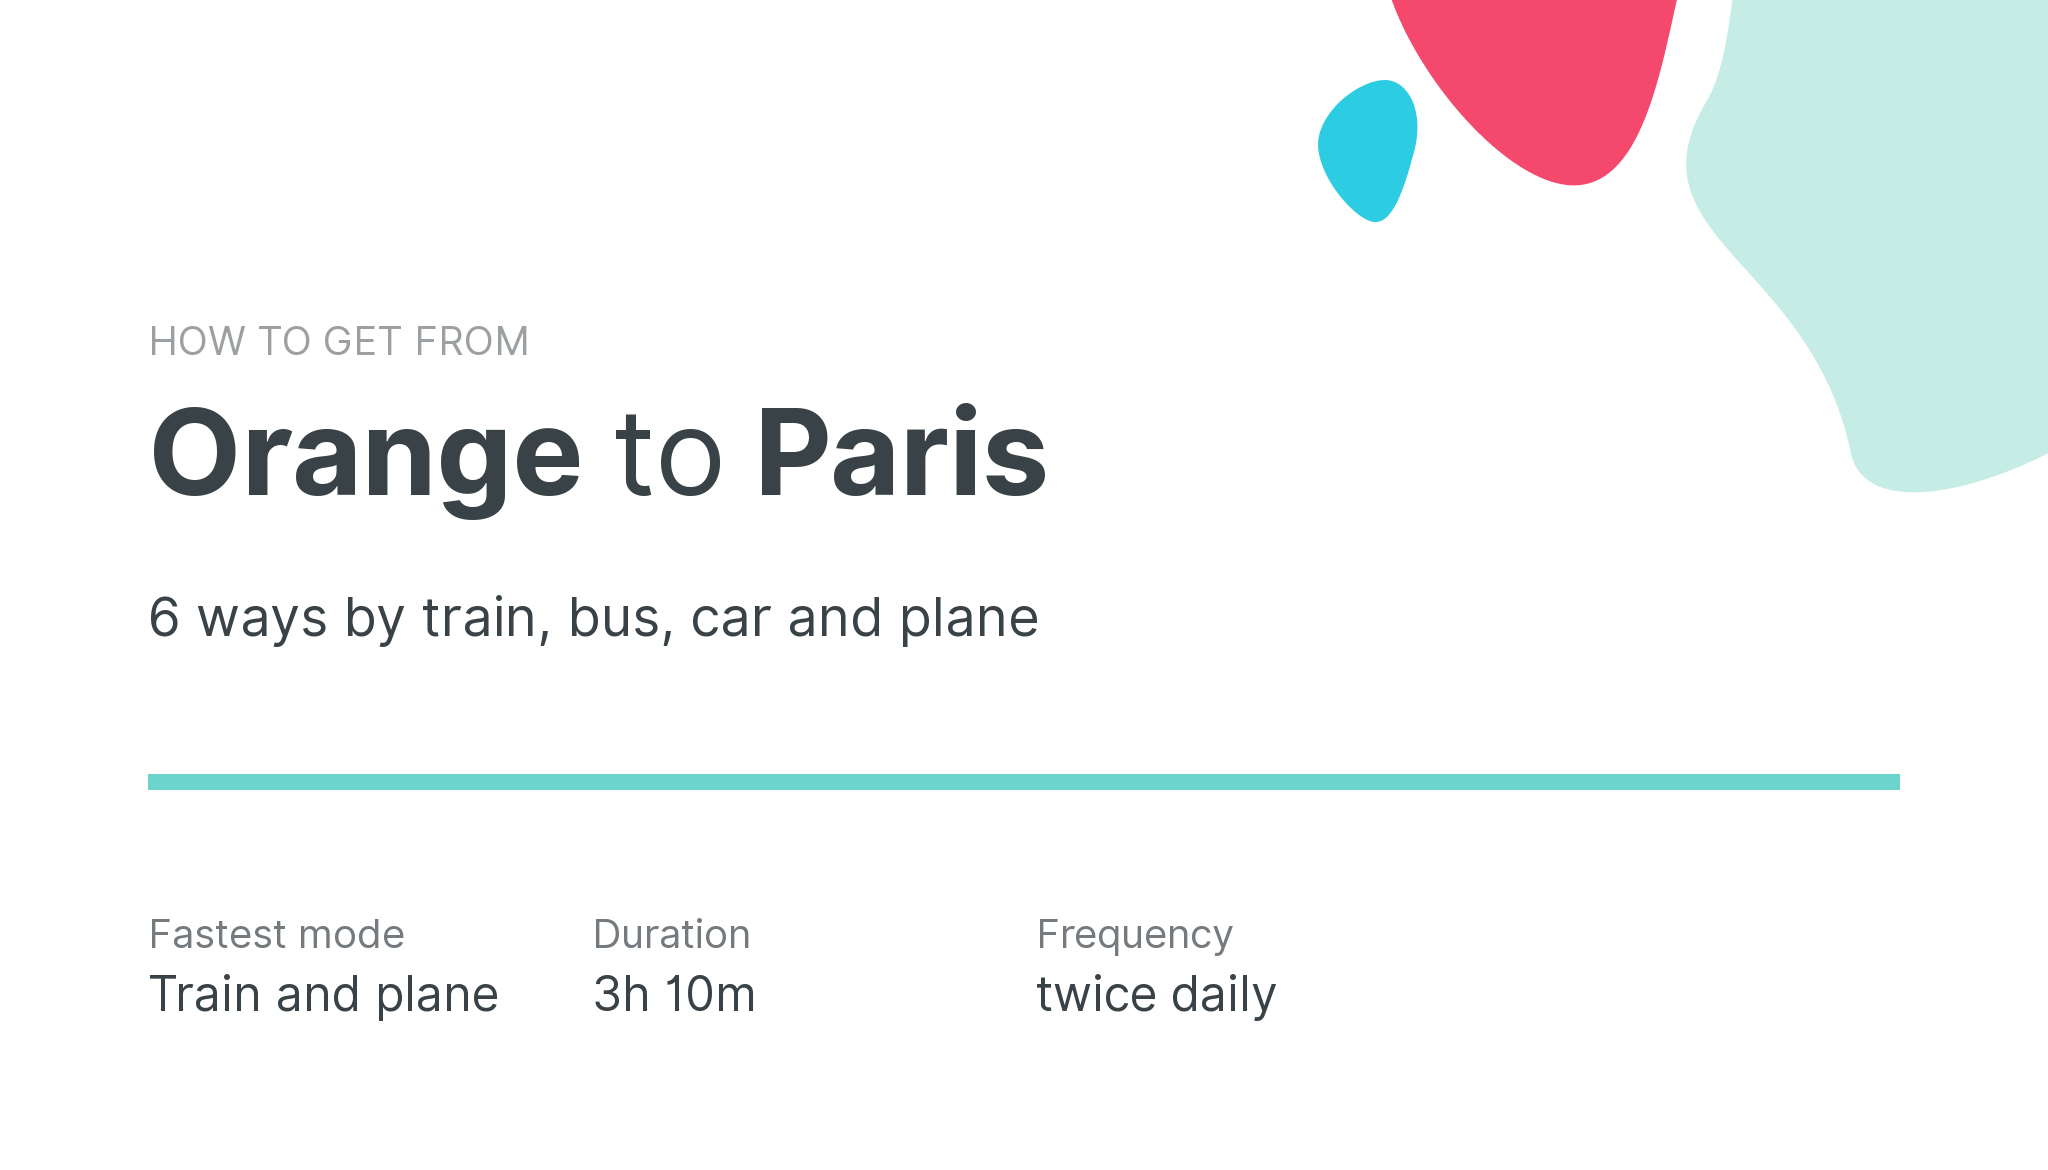 How do I get from Orange to Paris